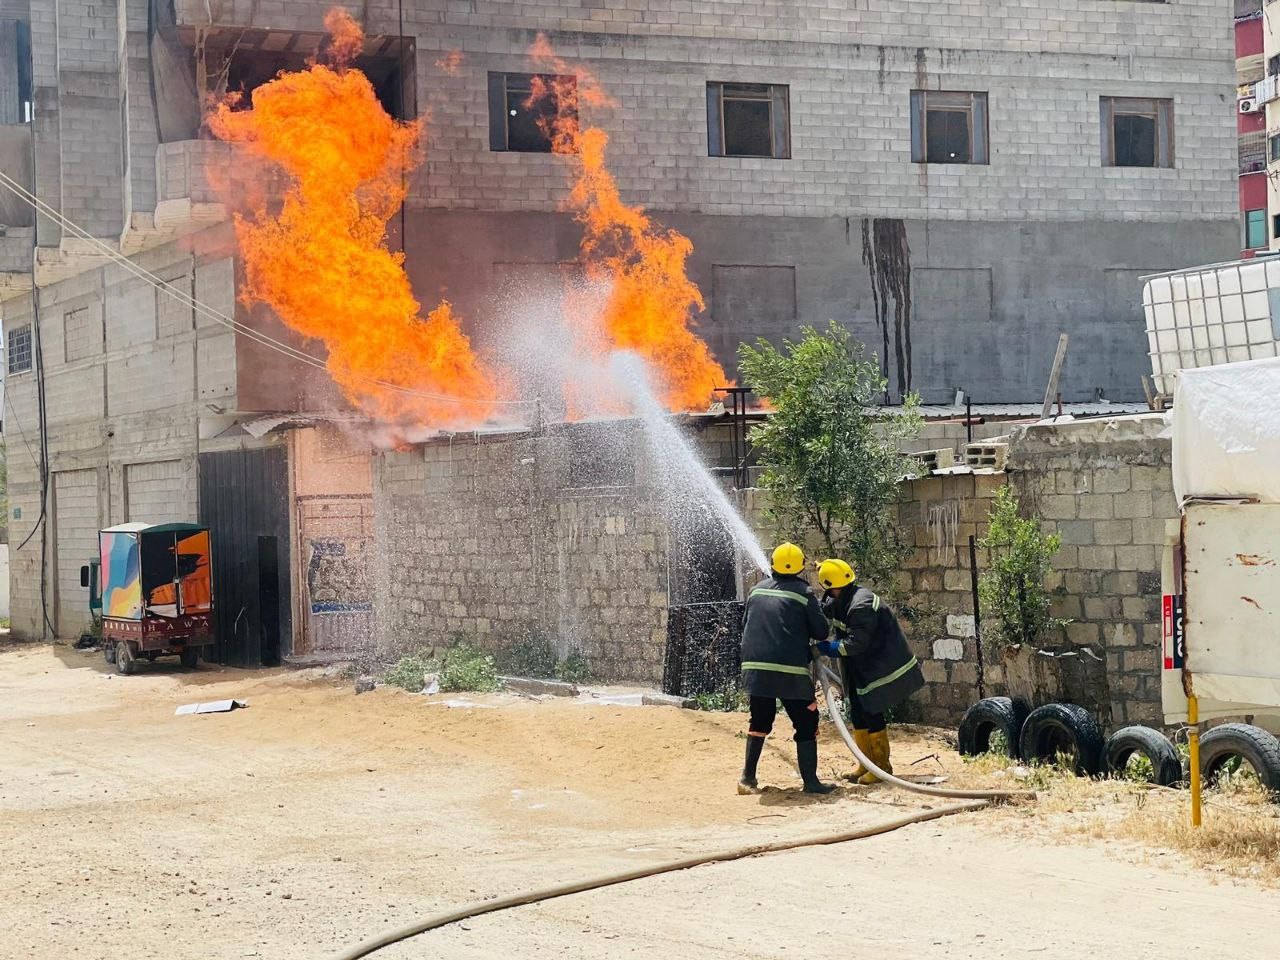 طقم الإطفاء بمديرية الدفاع المدني تتمكن من السيطرة على حريق نشب في نقطة عشوائية لتعبئة الغاز بين المنازل السكنية قرب شارع الصناعة بمدينة غزة.jpg